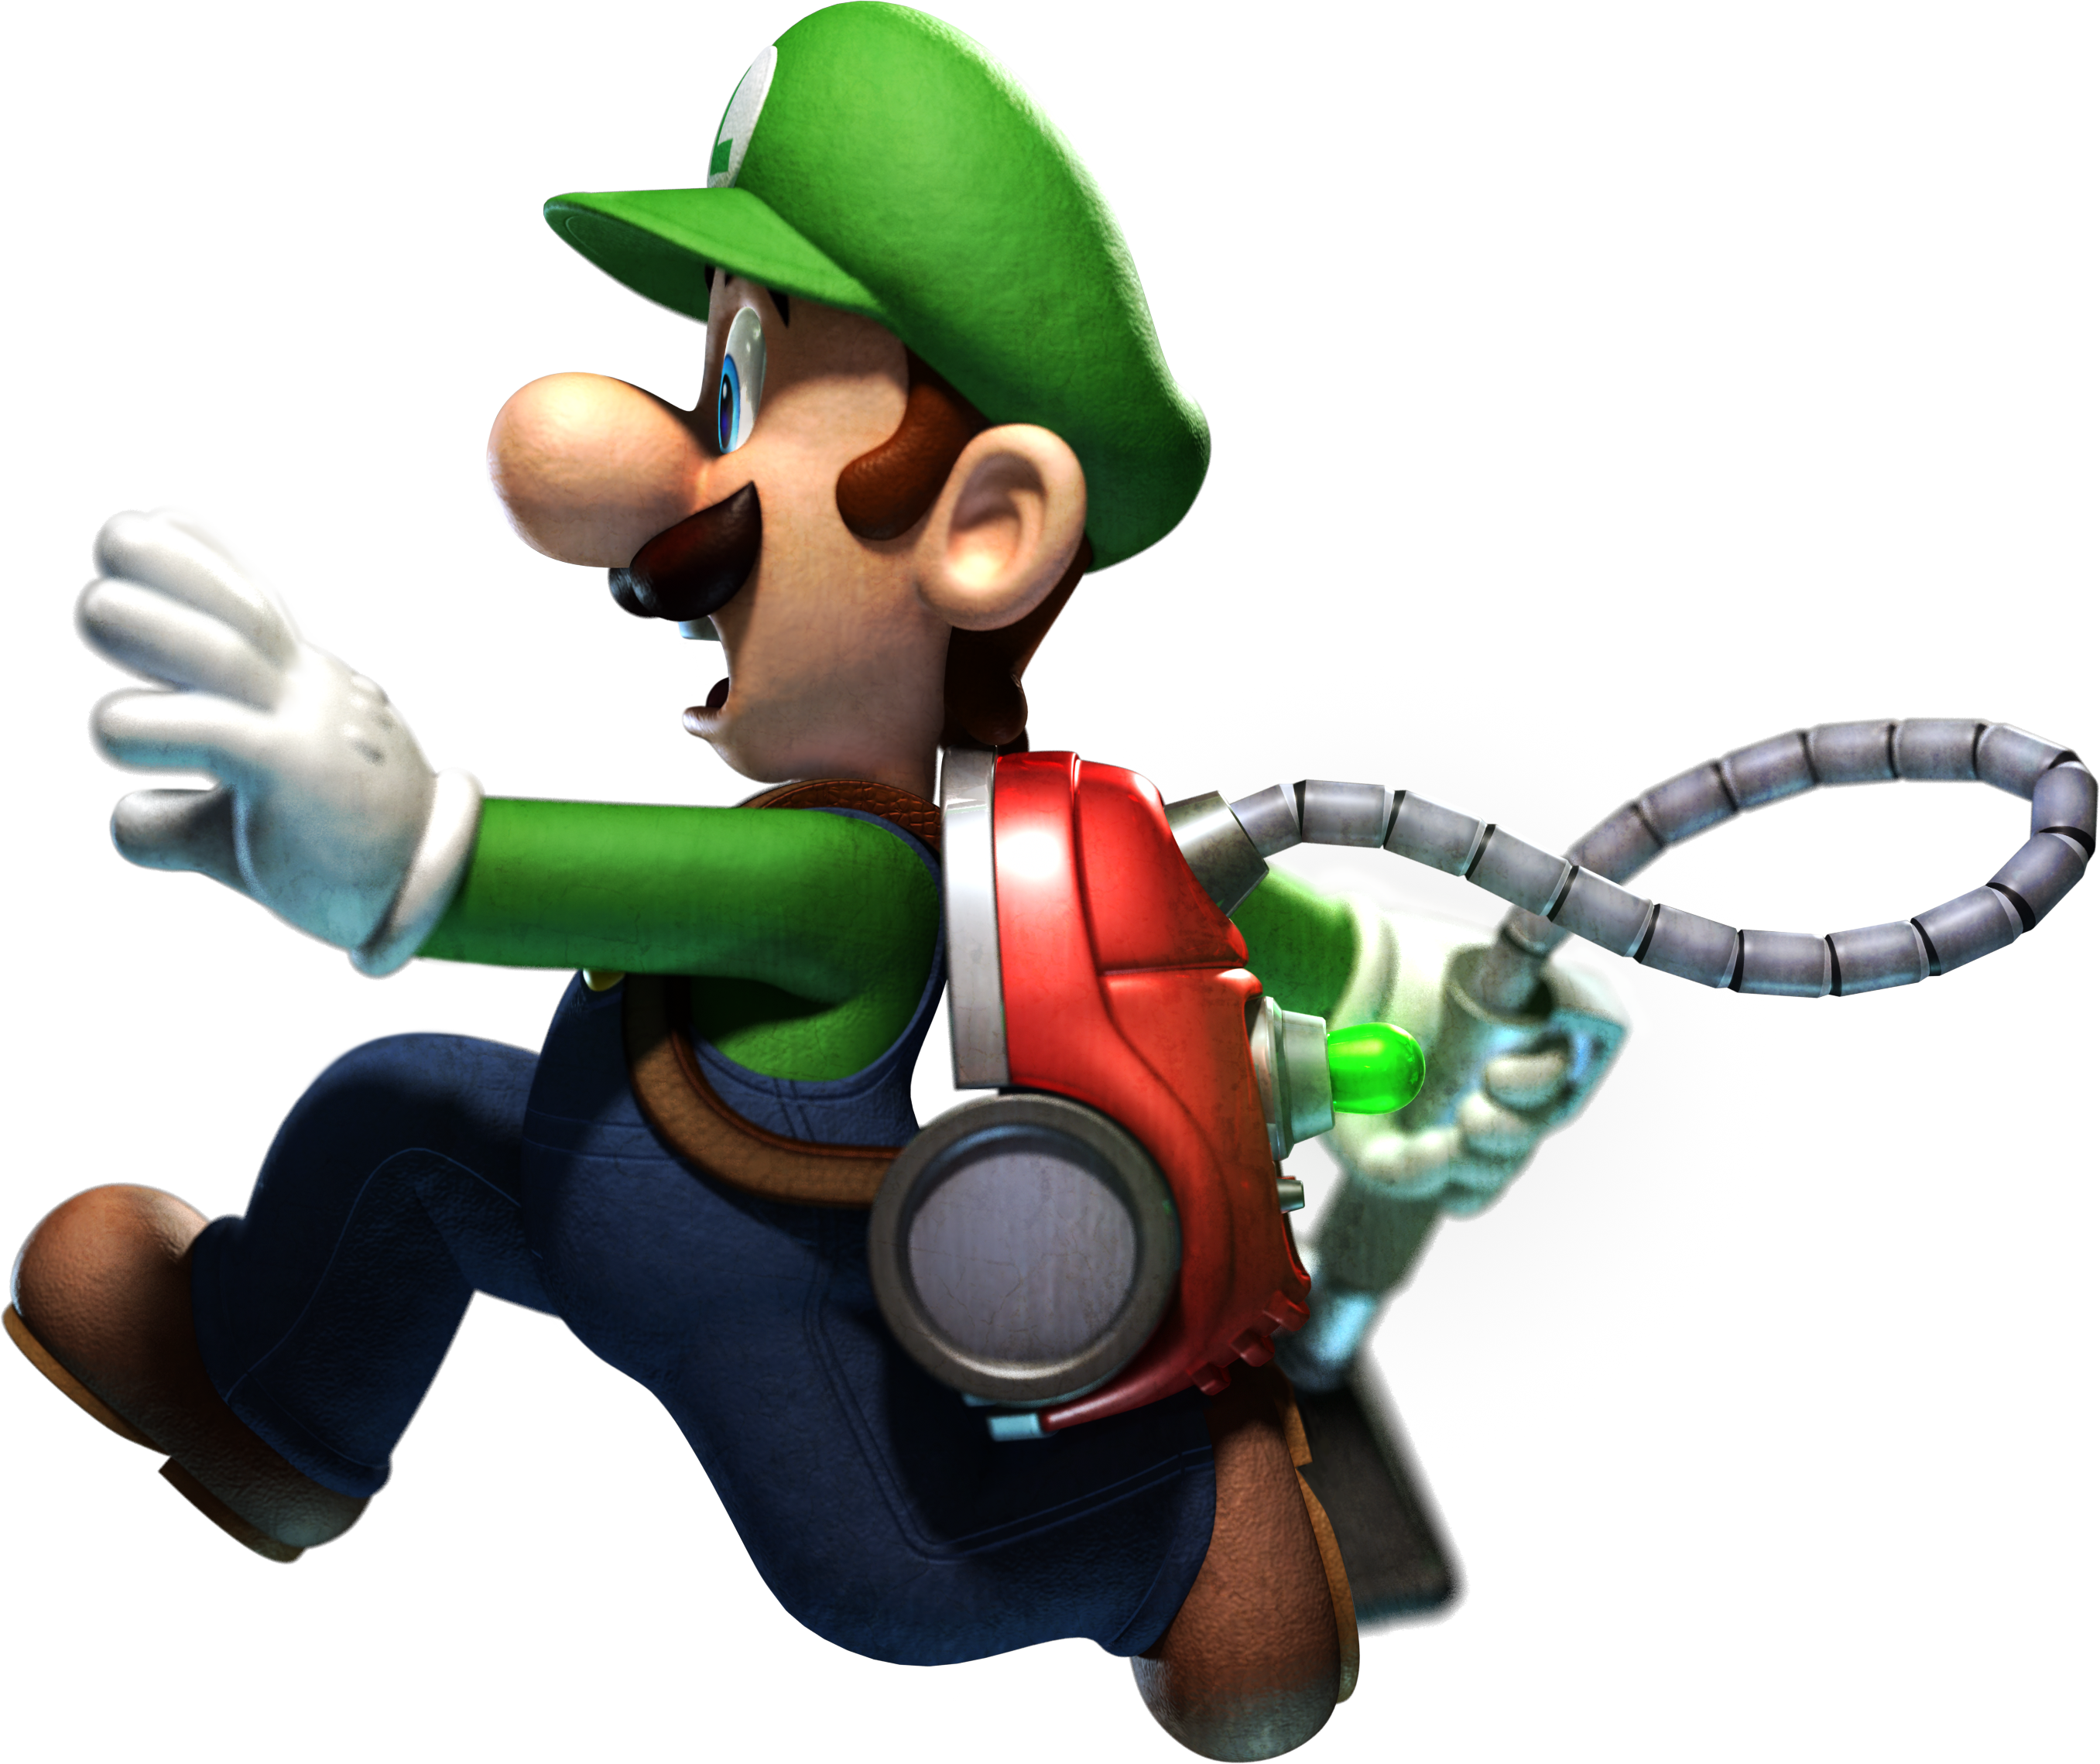 Luigi's Mansion: Dark Moon - Speedrun